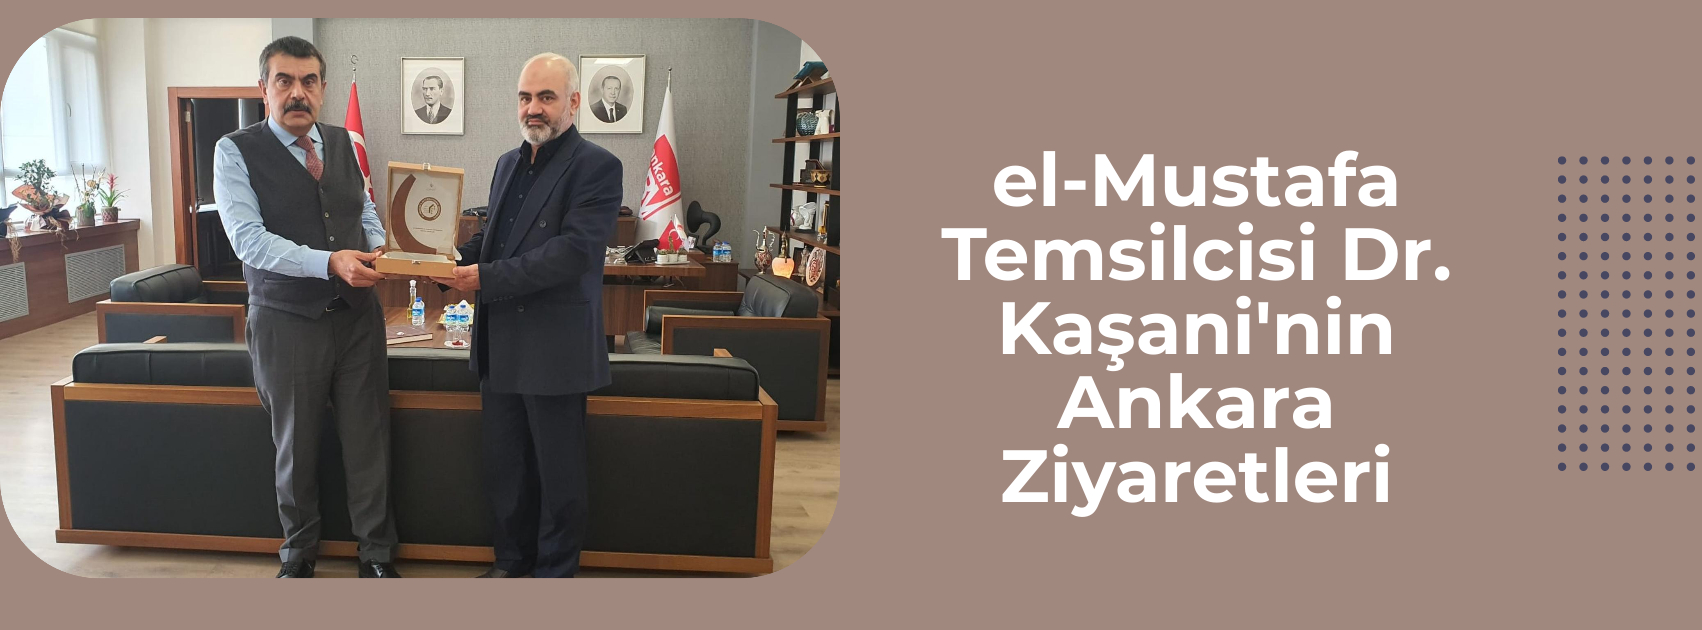 el-Mustafa Temsilcisi Dr. Kaşani'nin Ankara Ziyaretleri